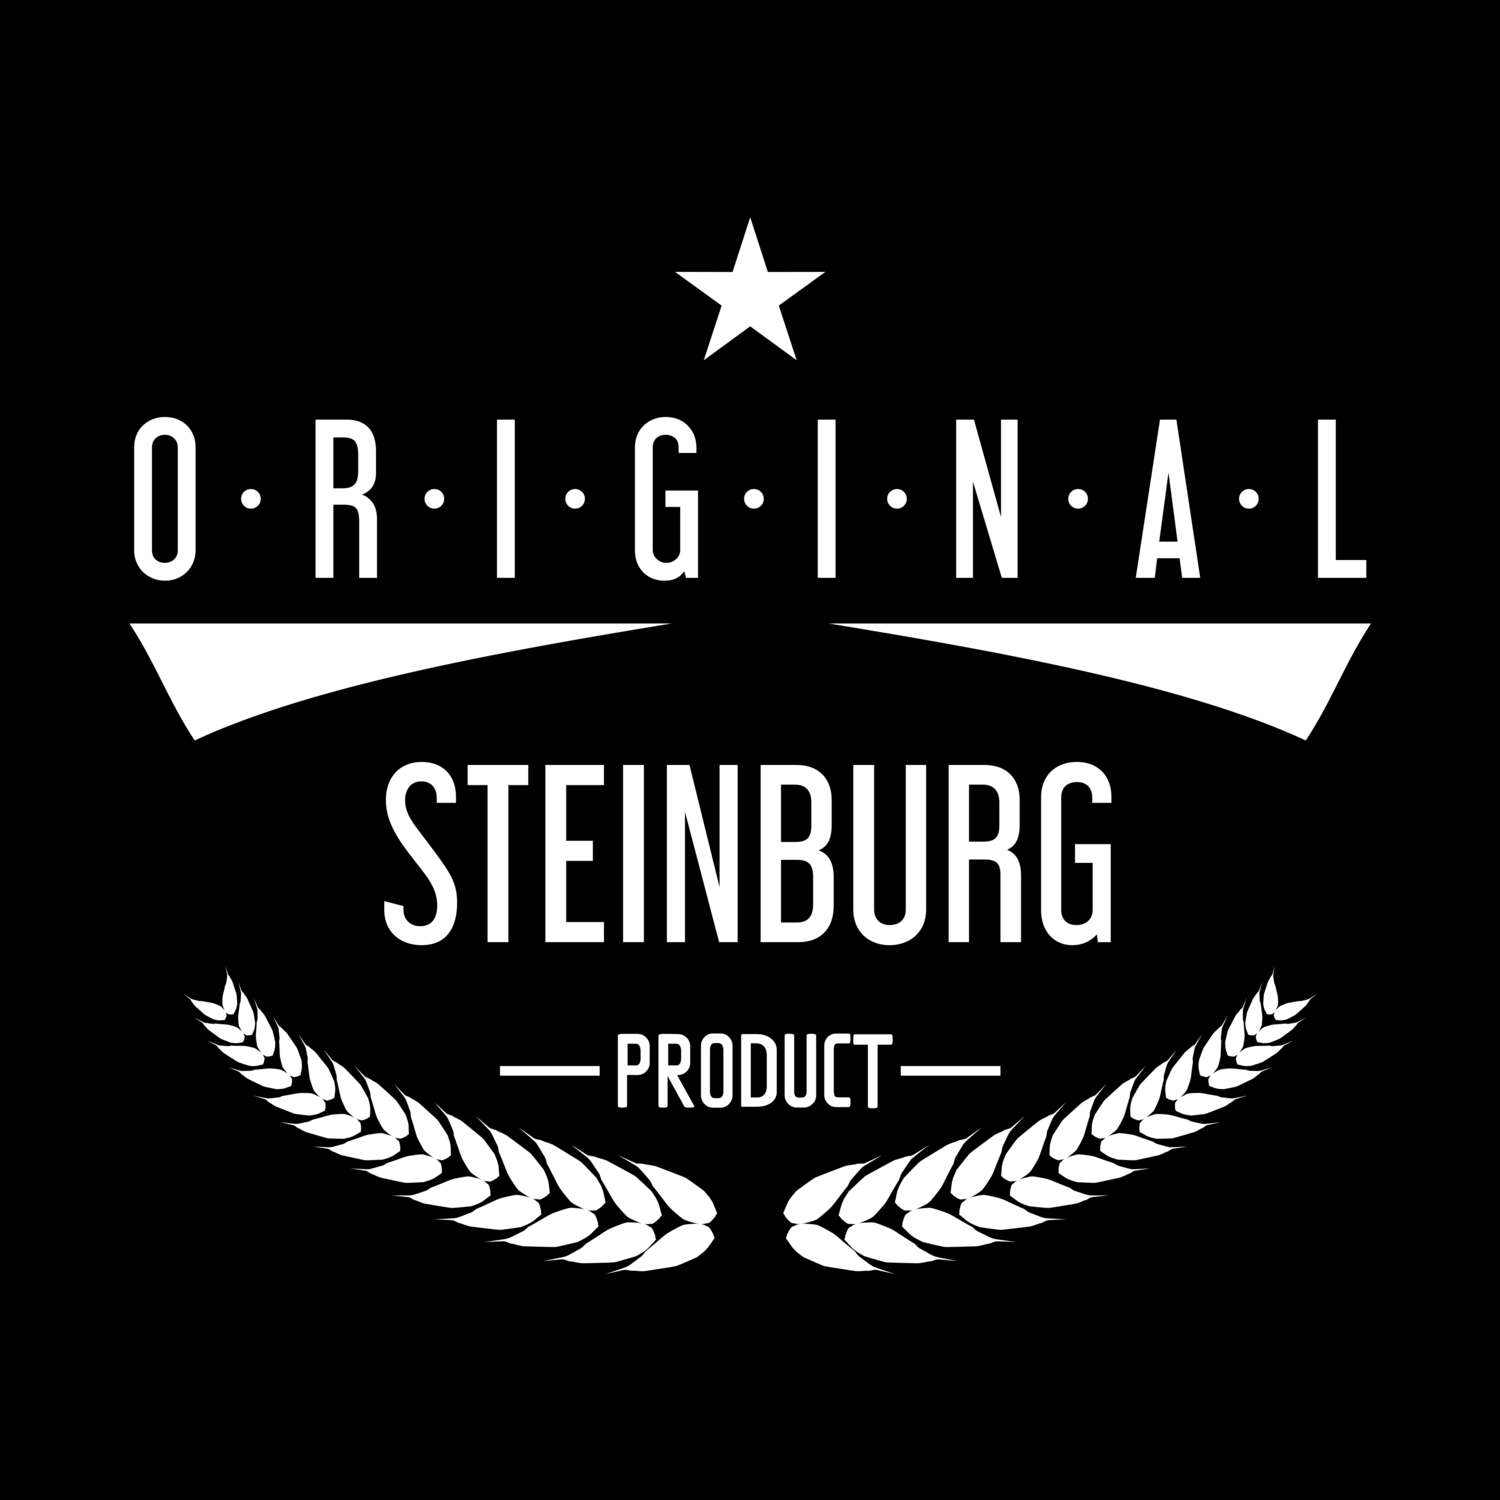 Steinburg T-Shirt »Original Product«